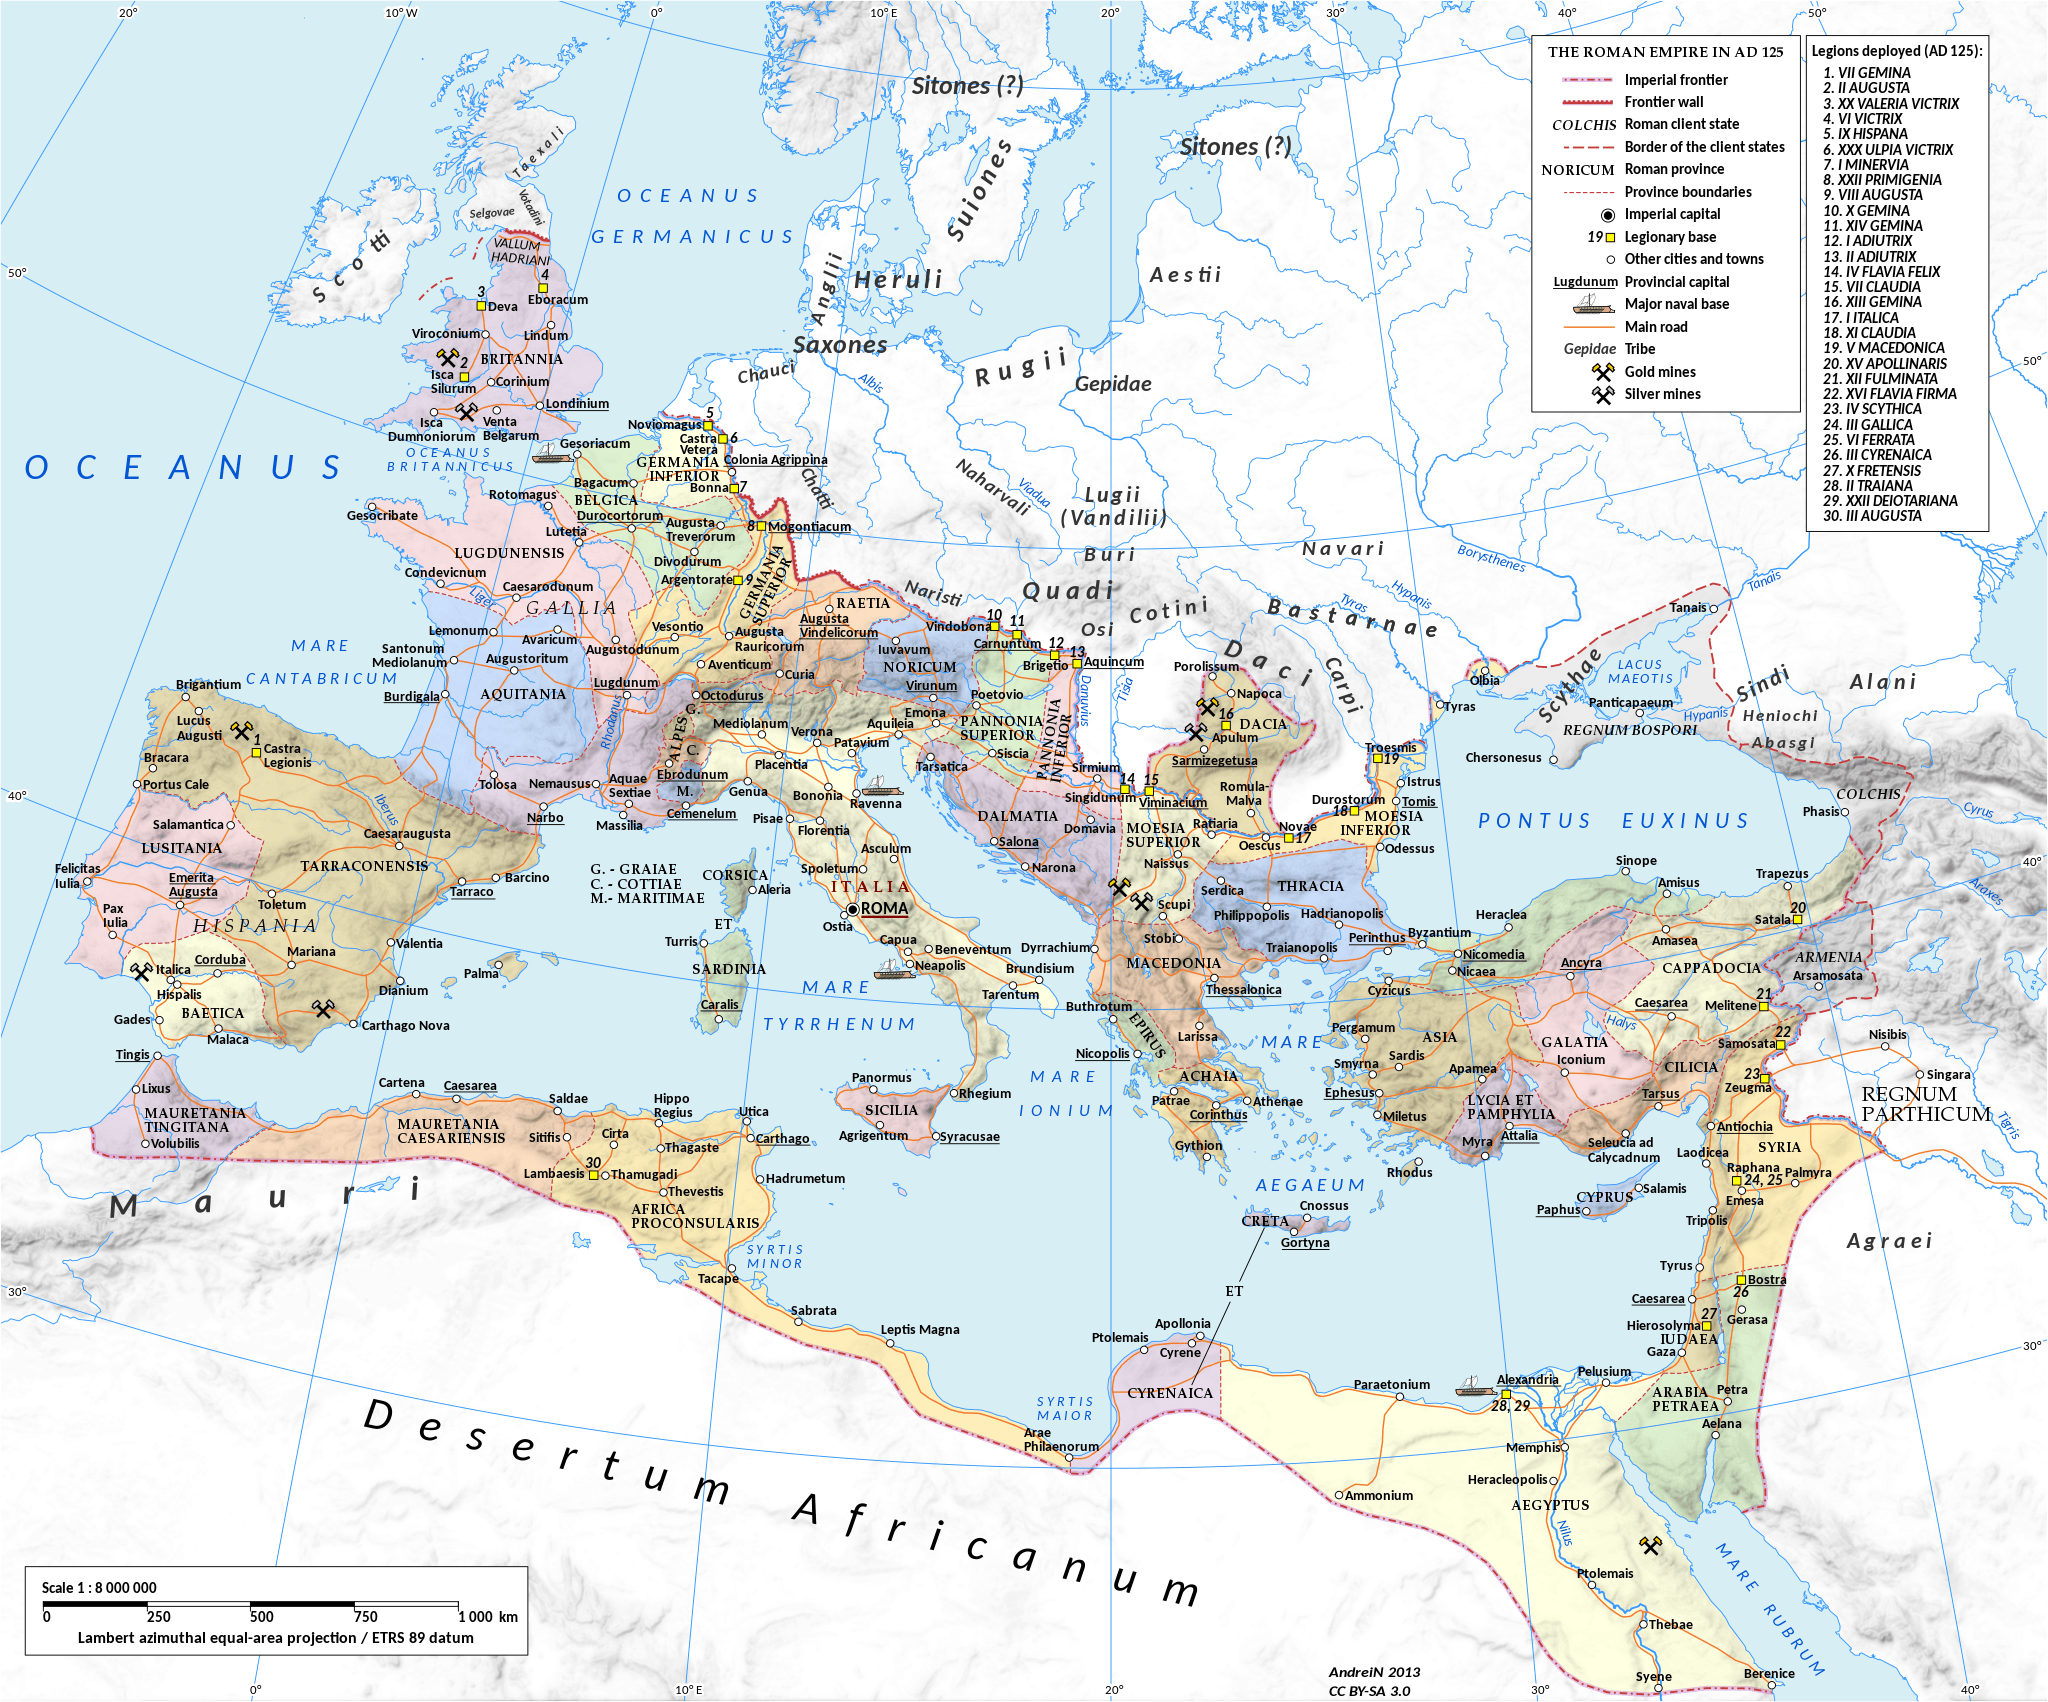 Romeinse Rijk kaart: Rome, Italië, westelijke en oostelijke rijk